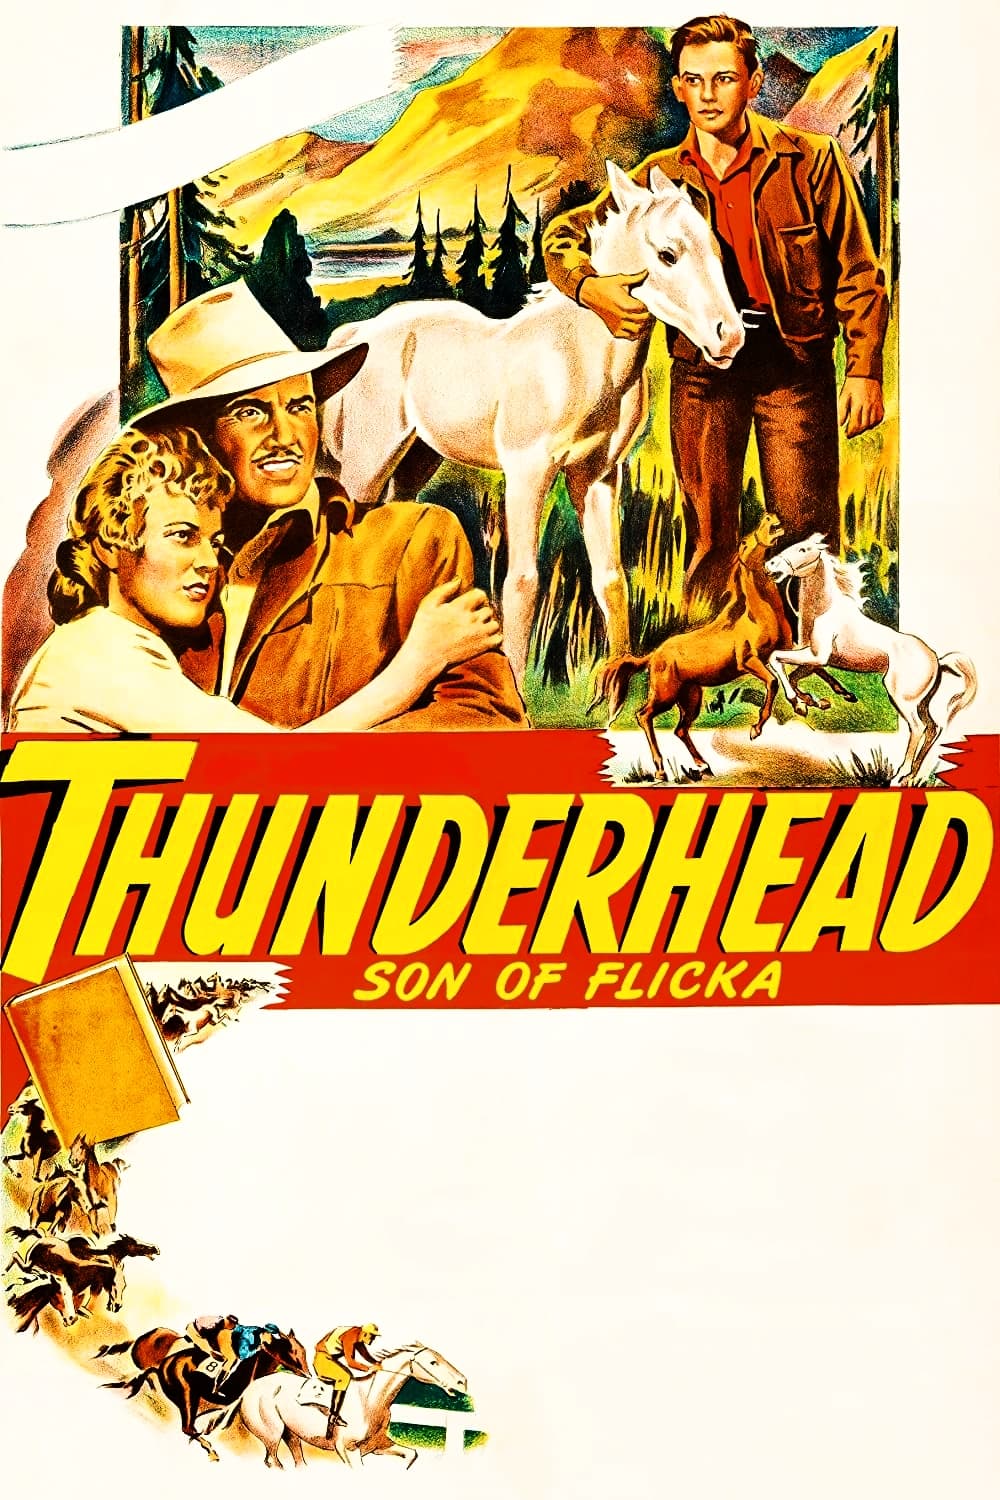 Thunderhead - Son of Flicka